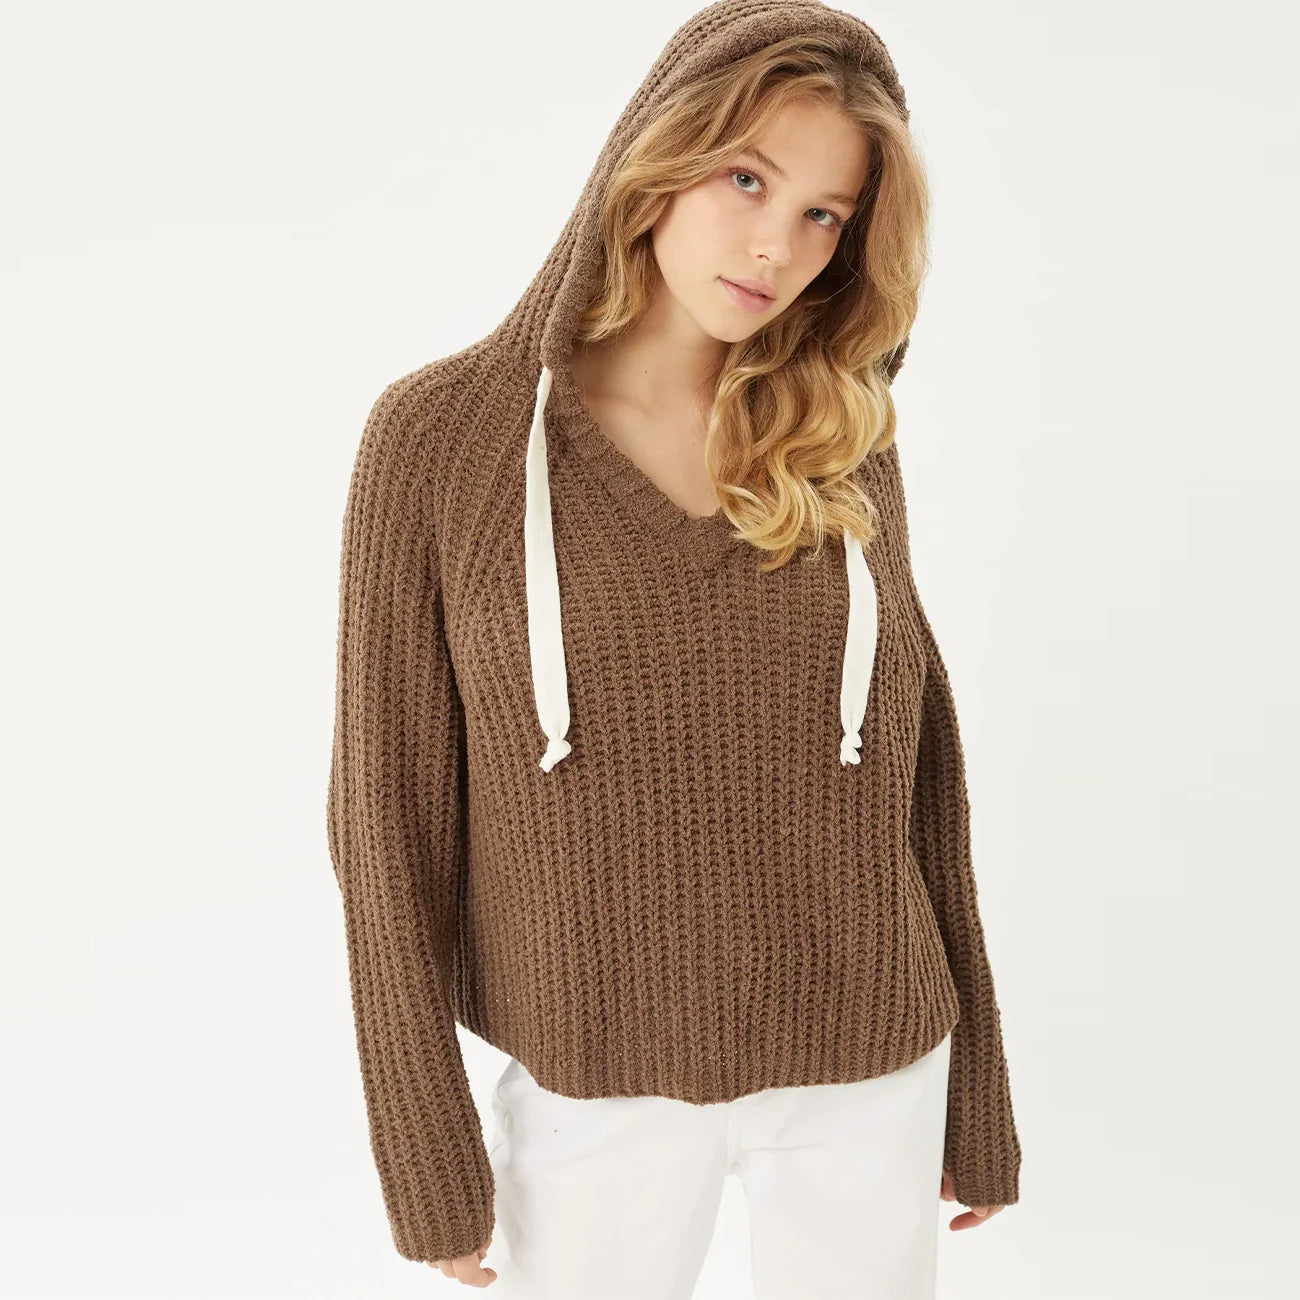 Pullover Sweater & Hoodie Top - Black